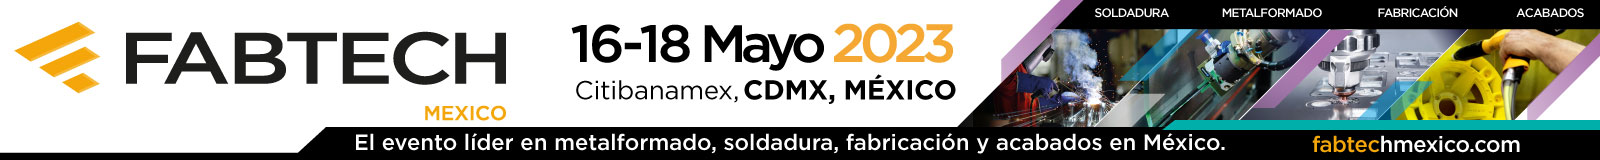 Fabtech México 2023, El evento líder en metalformado, soldadura, fabricación y acabados en México, 16 - 18 de Mayo Citibanamex CDMX